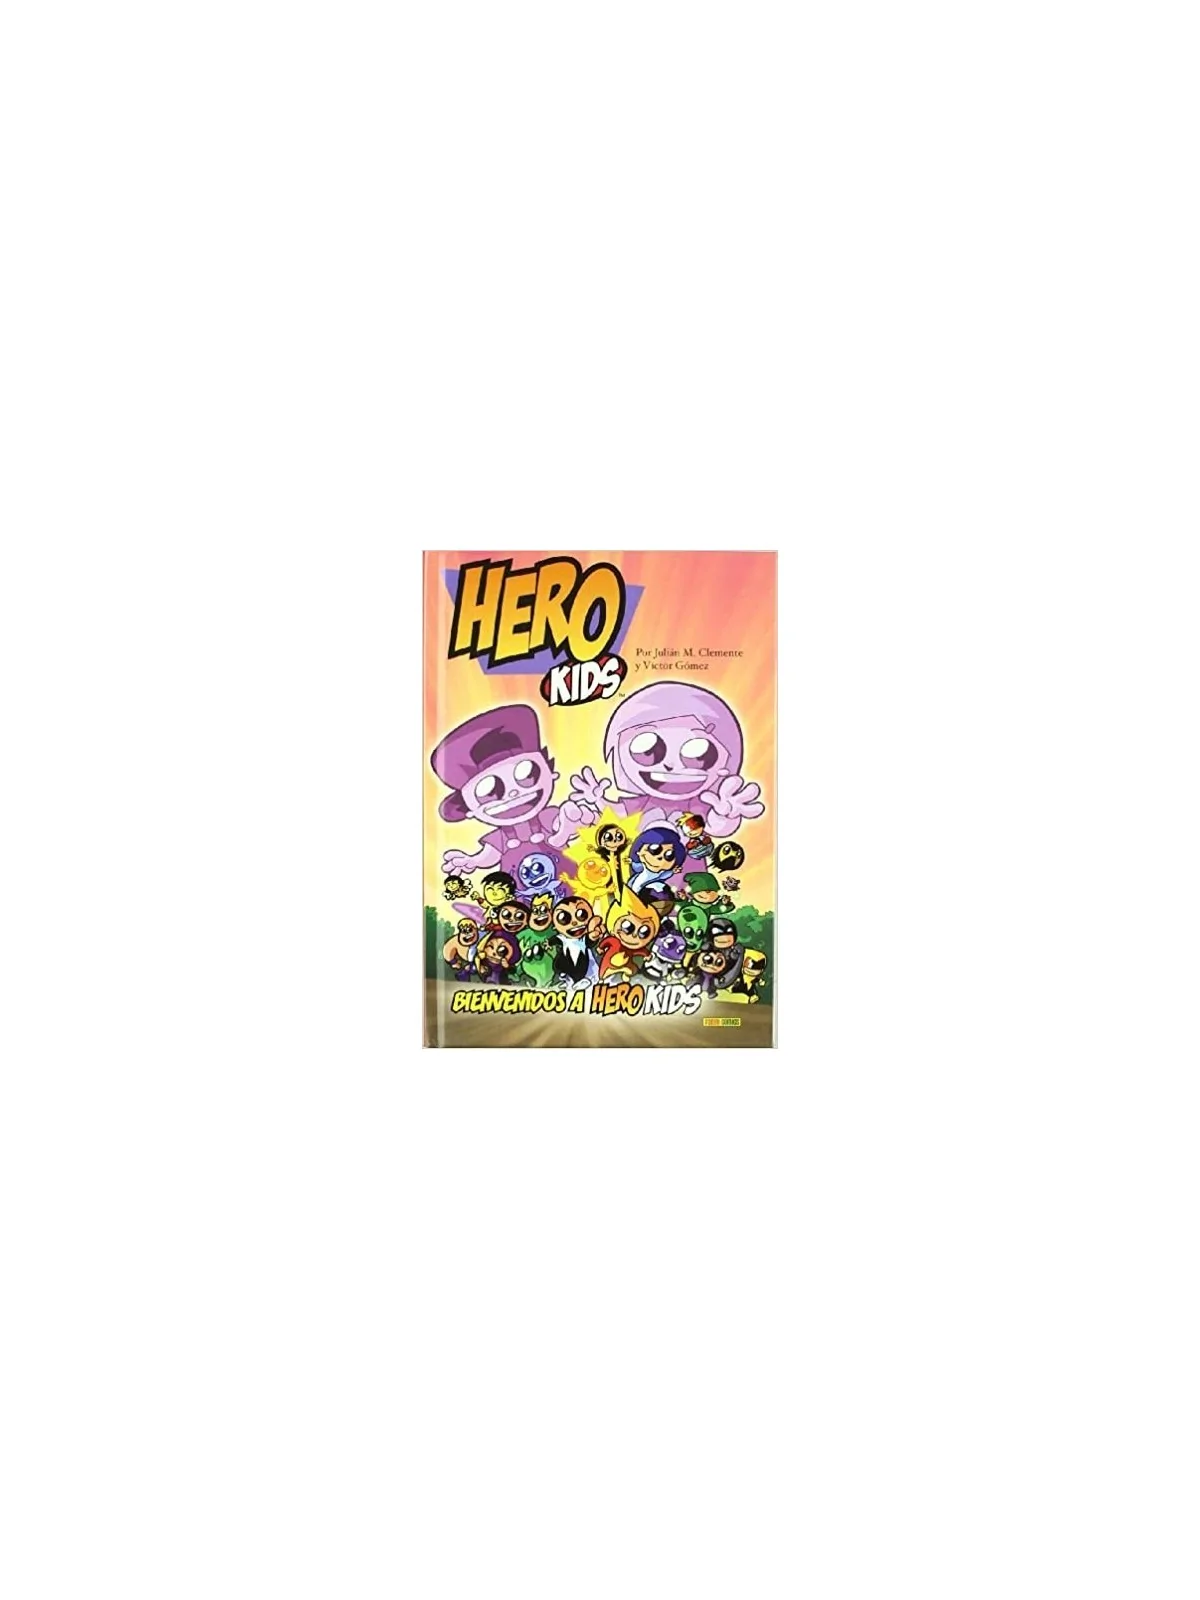 Comprar Bienvenidos a Hero Kids barato al mejor precio 9,46 € de Panin